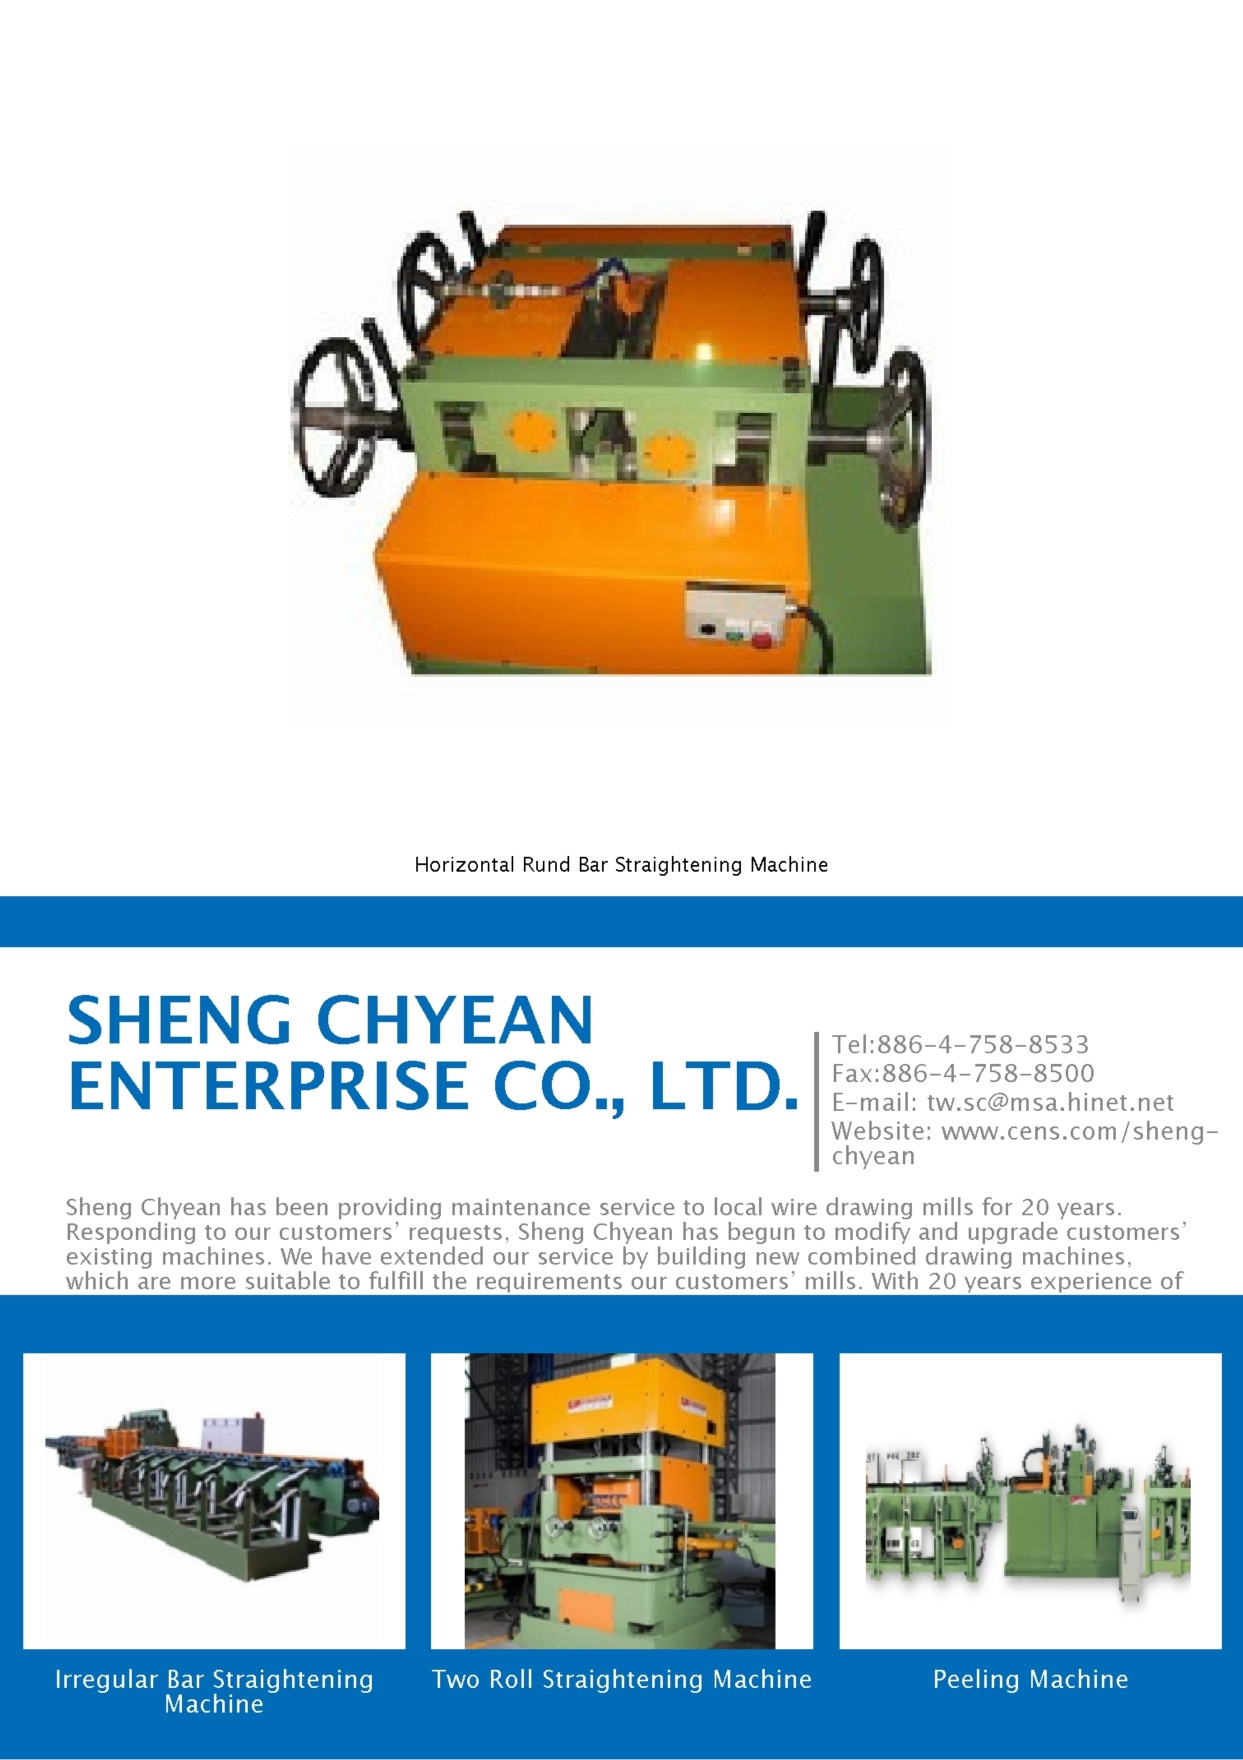 SHENG CHYEAN ENTERPRISE CO., LTD.